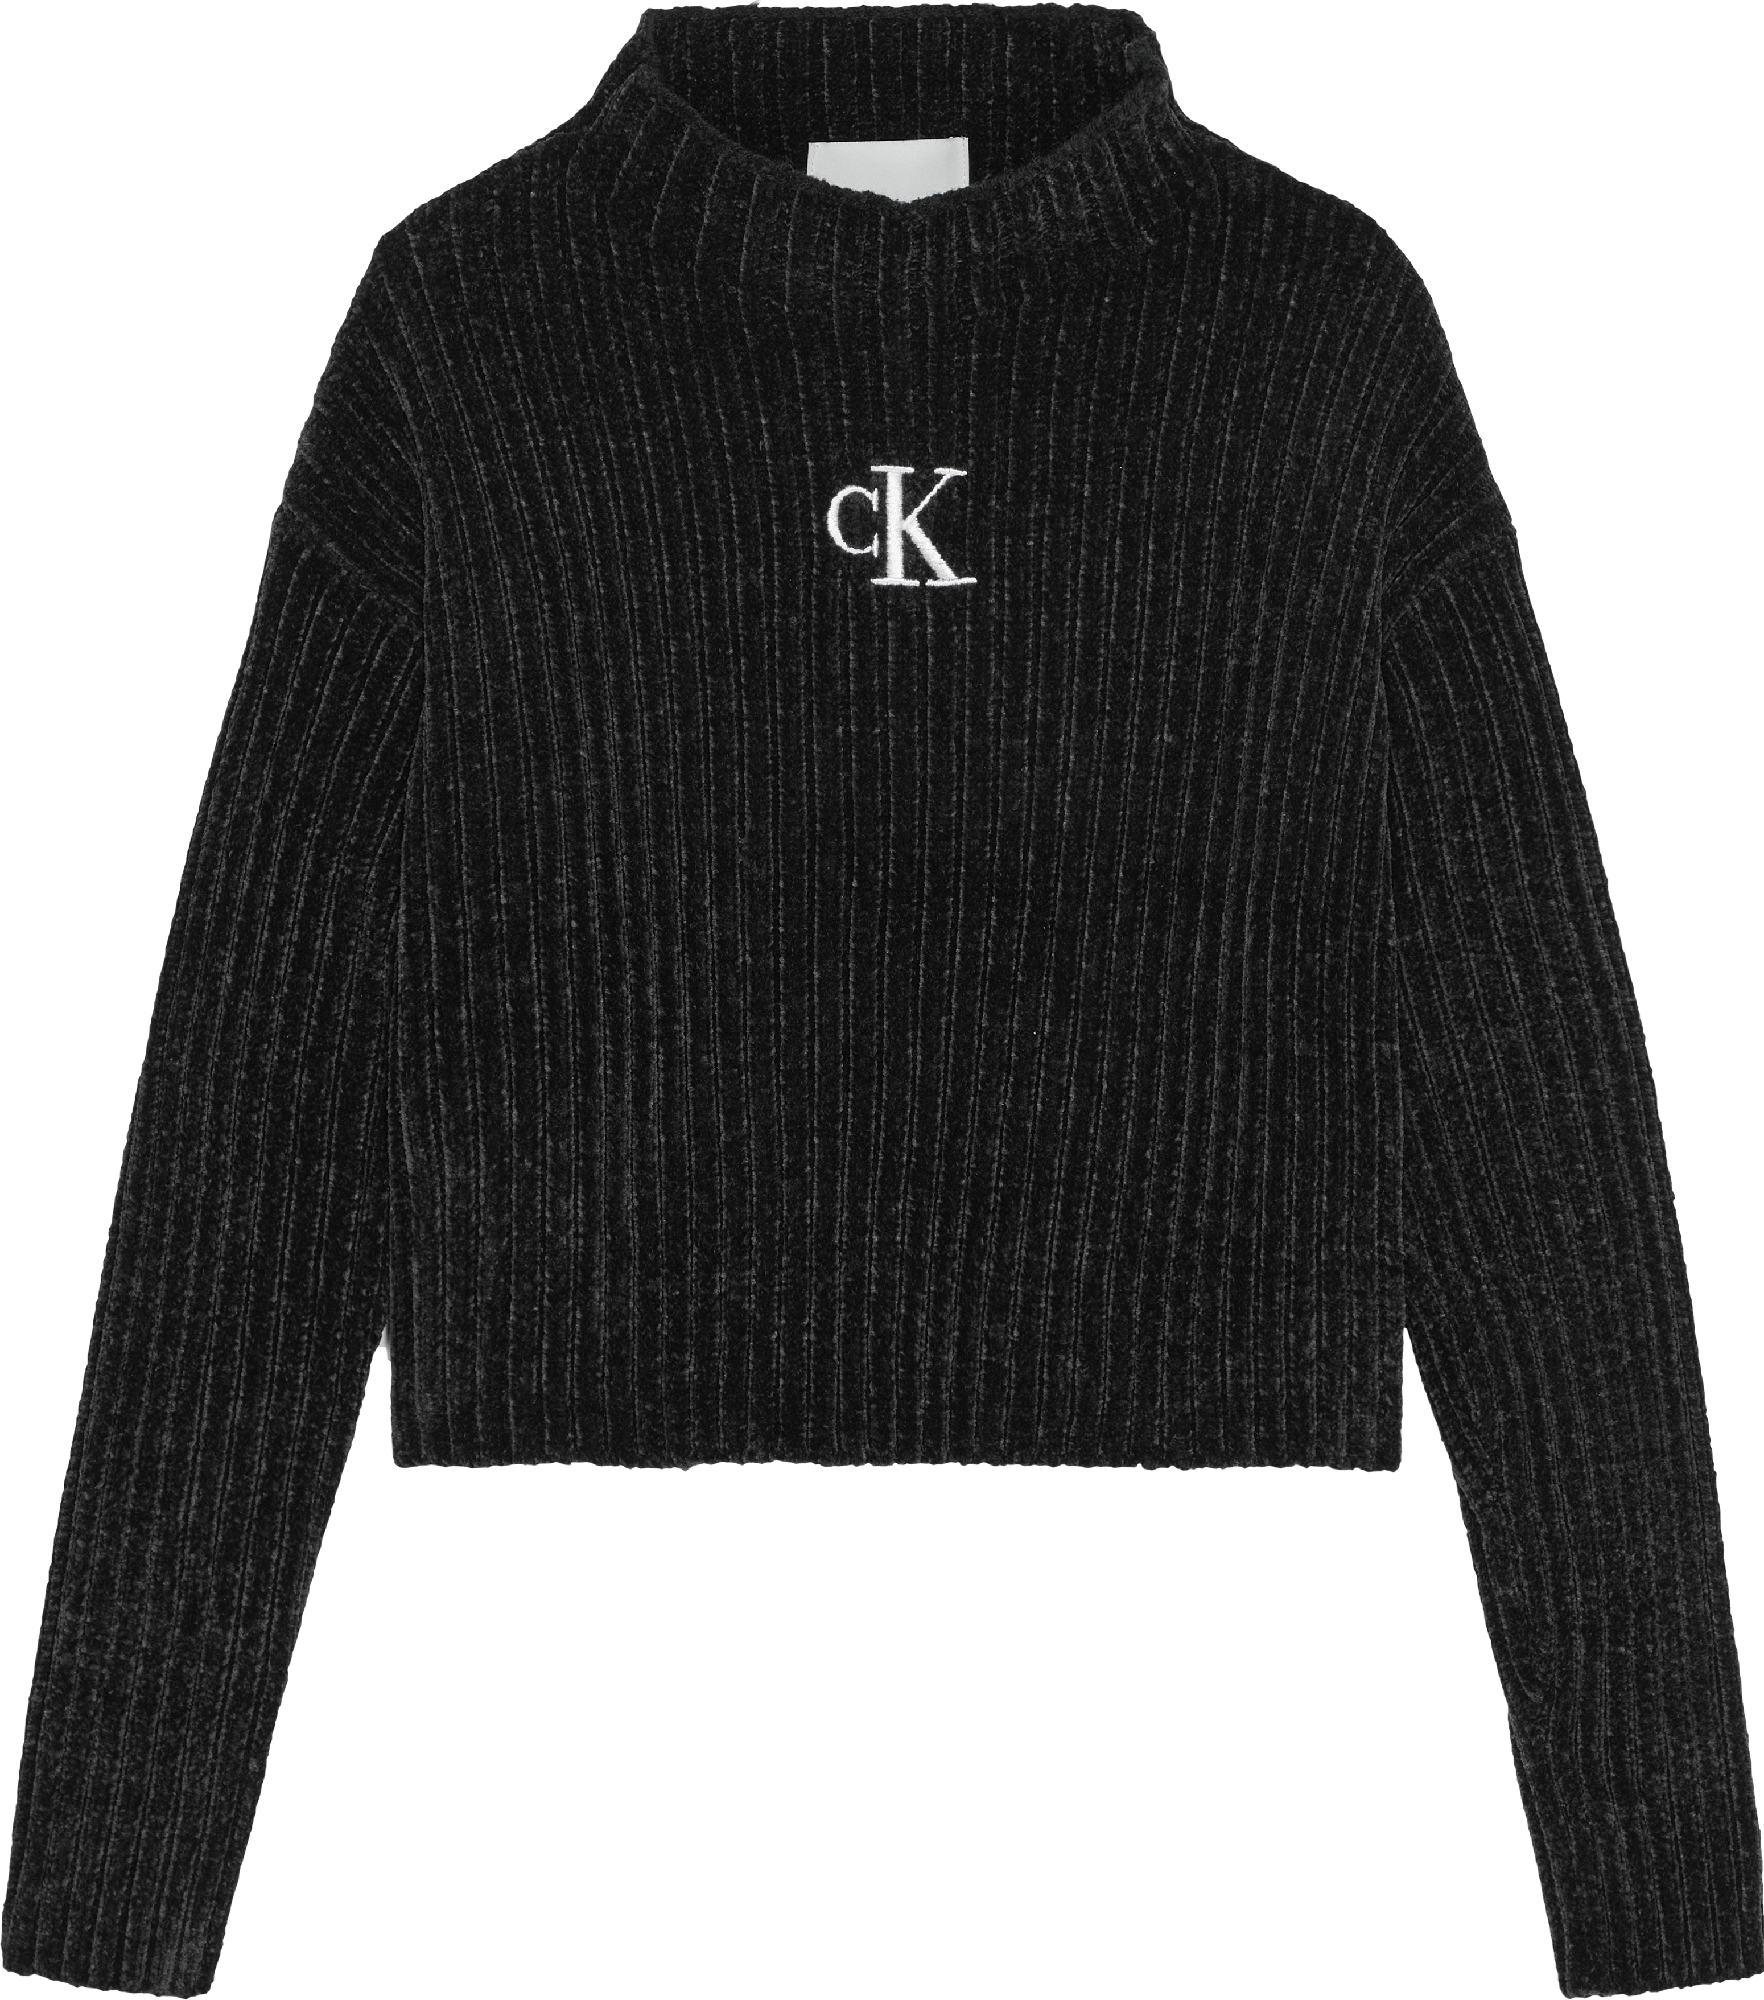 Meisjes CHENILLE MONOGRAM SWEATER van Calvin Klein in de kleur Ck Black in maat 176.